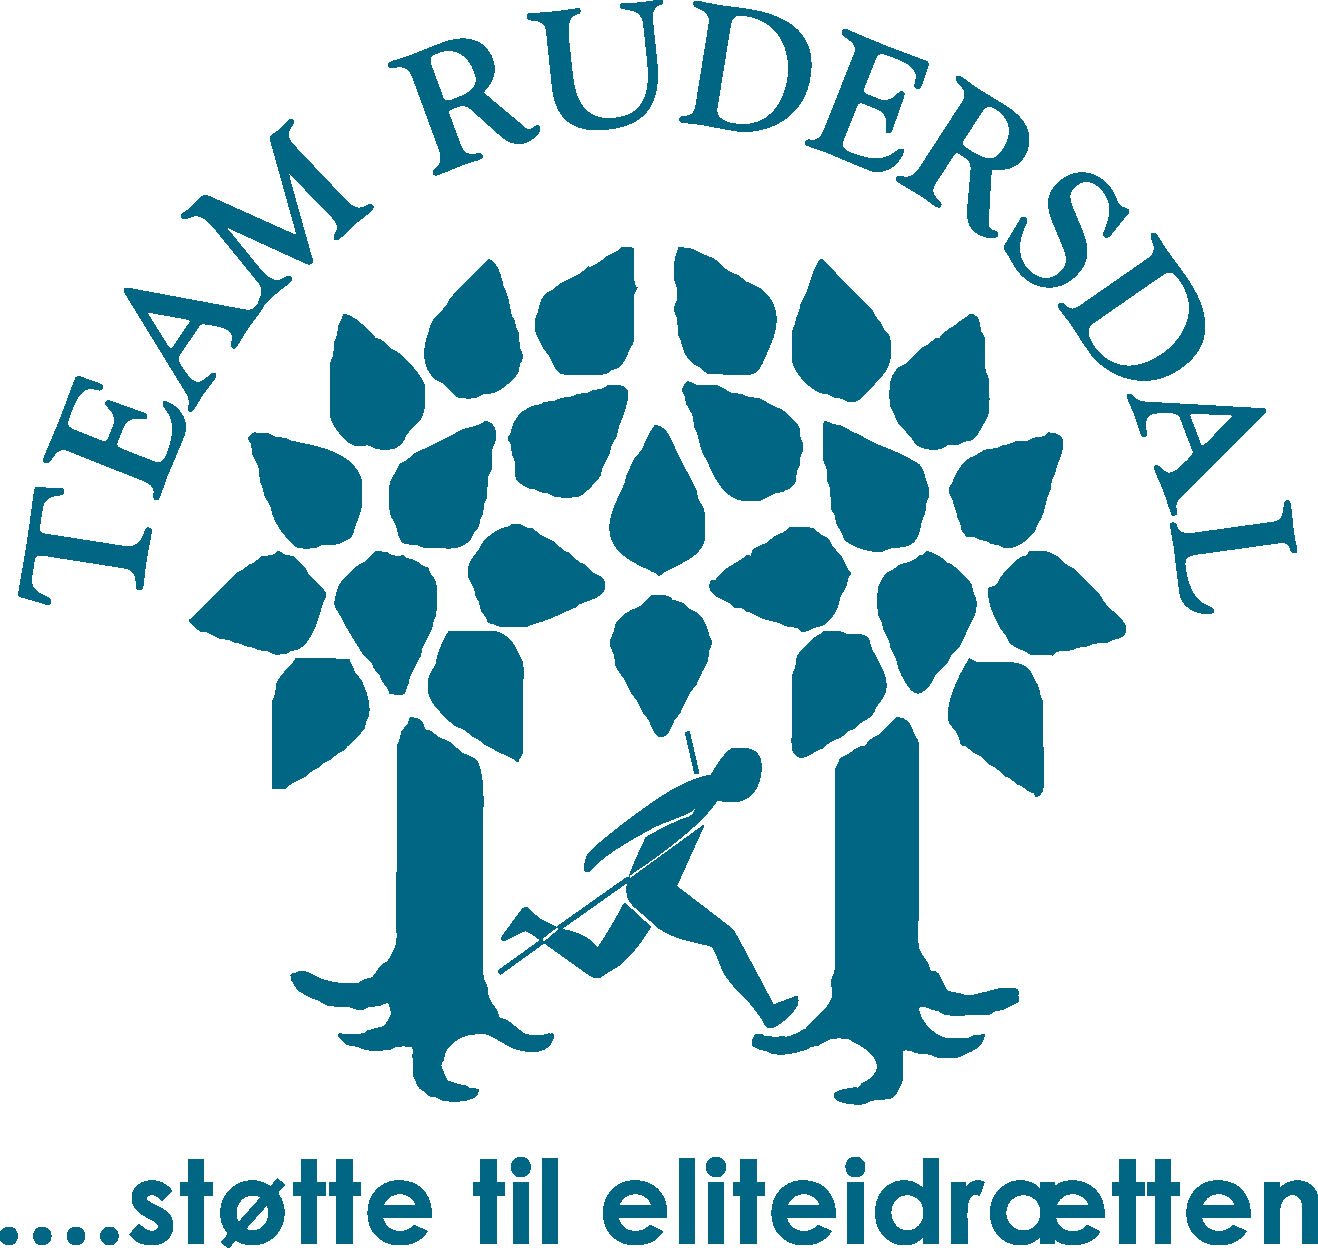 teamRudersdal-logo06.jpg